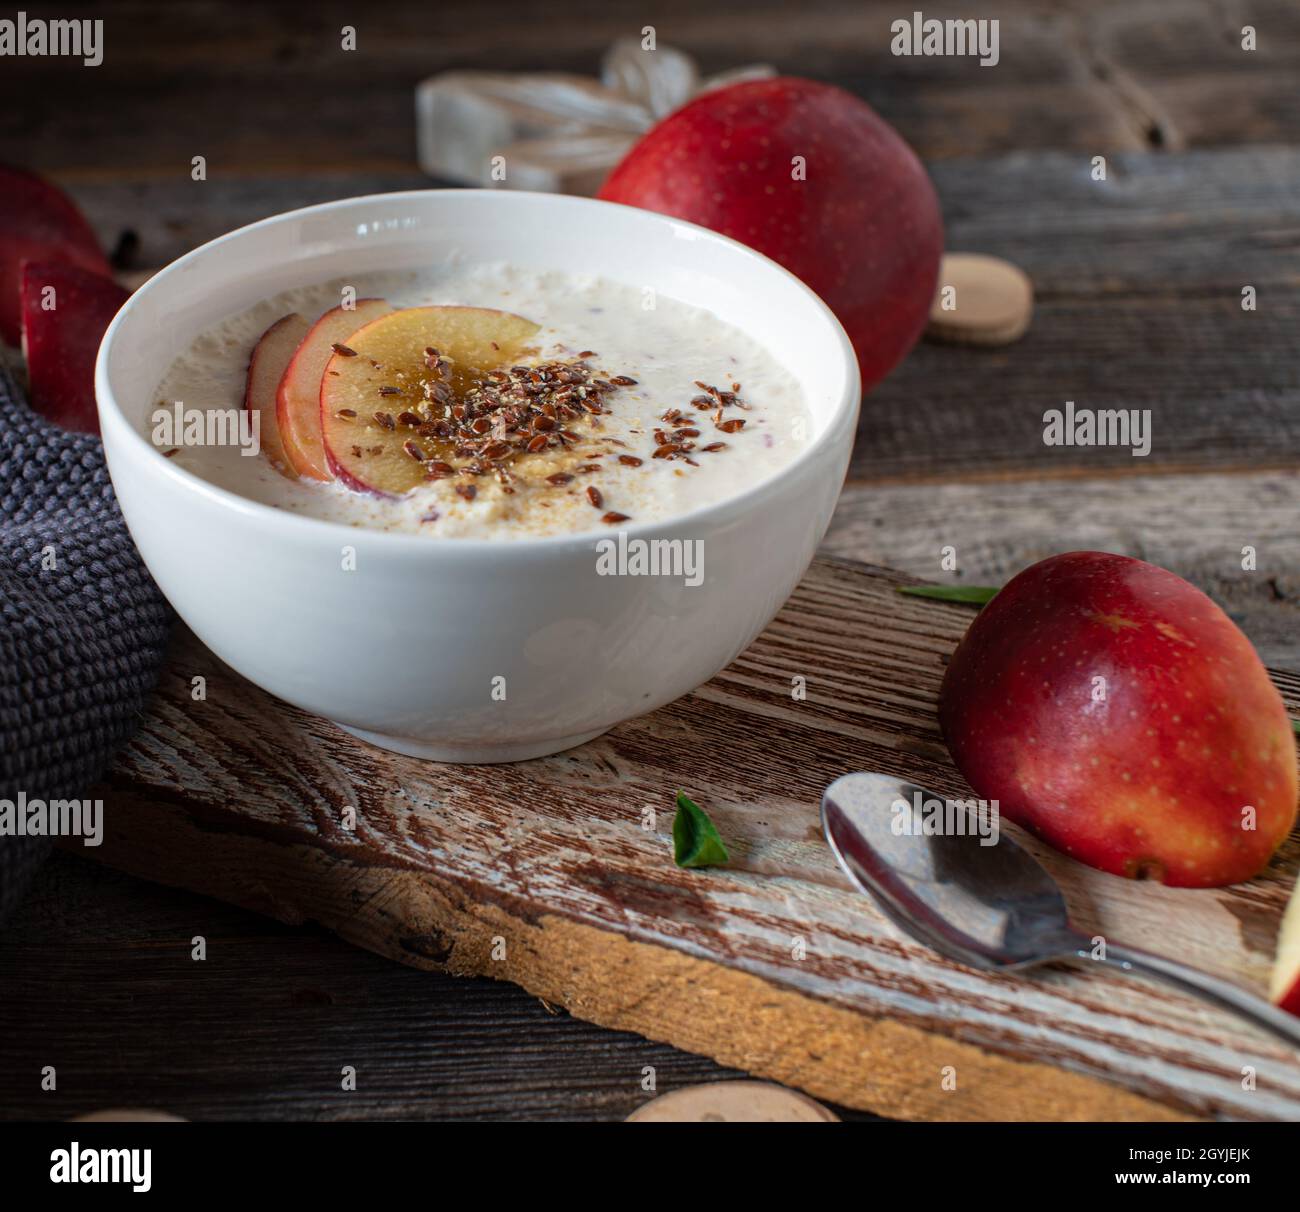 Hausgemachter Joghurt, gemischt mit frischen roten Äpfeln, serviert mit Leinsamen in einer Schüssel auf einem Holztisch. Gesundes glutenfreies und kohlenhydratartiges Frühstück oder Snack Stockfoto